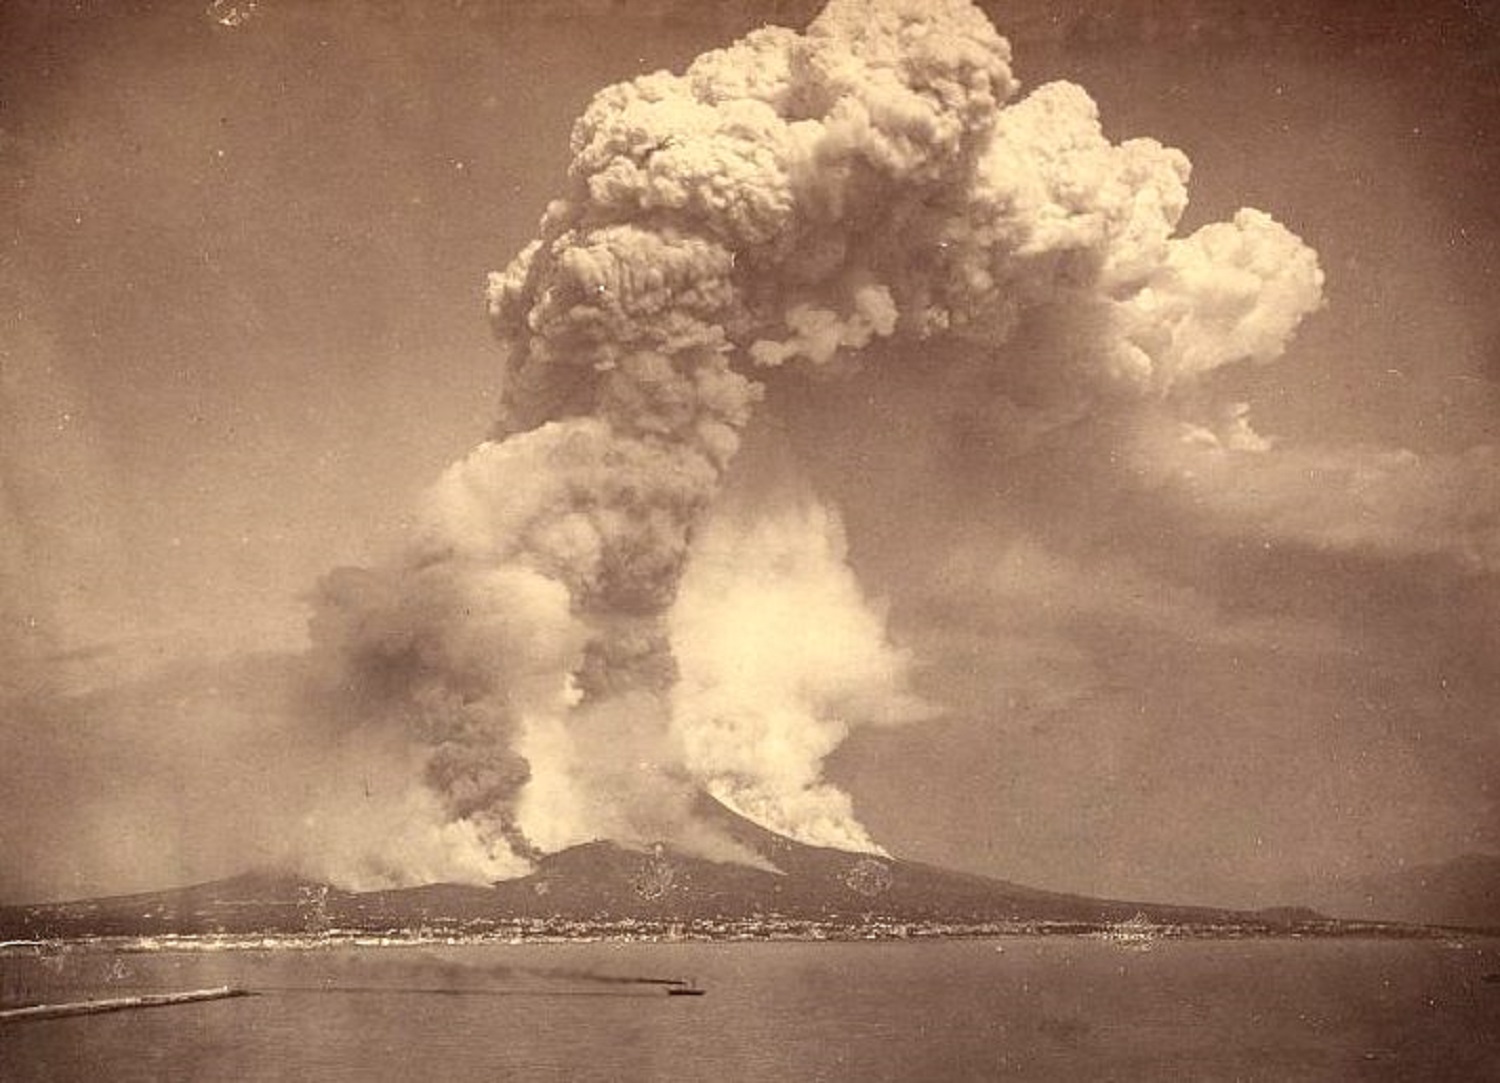 pompeii volcano eruption